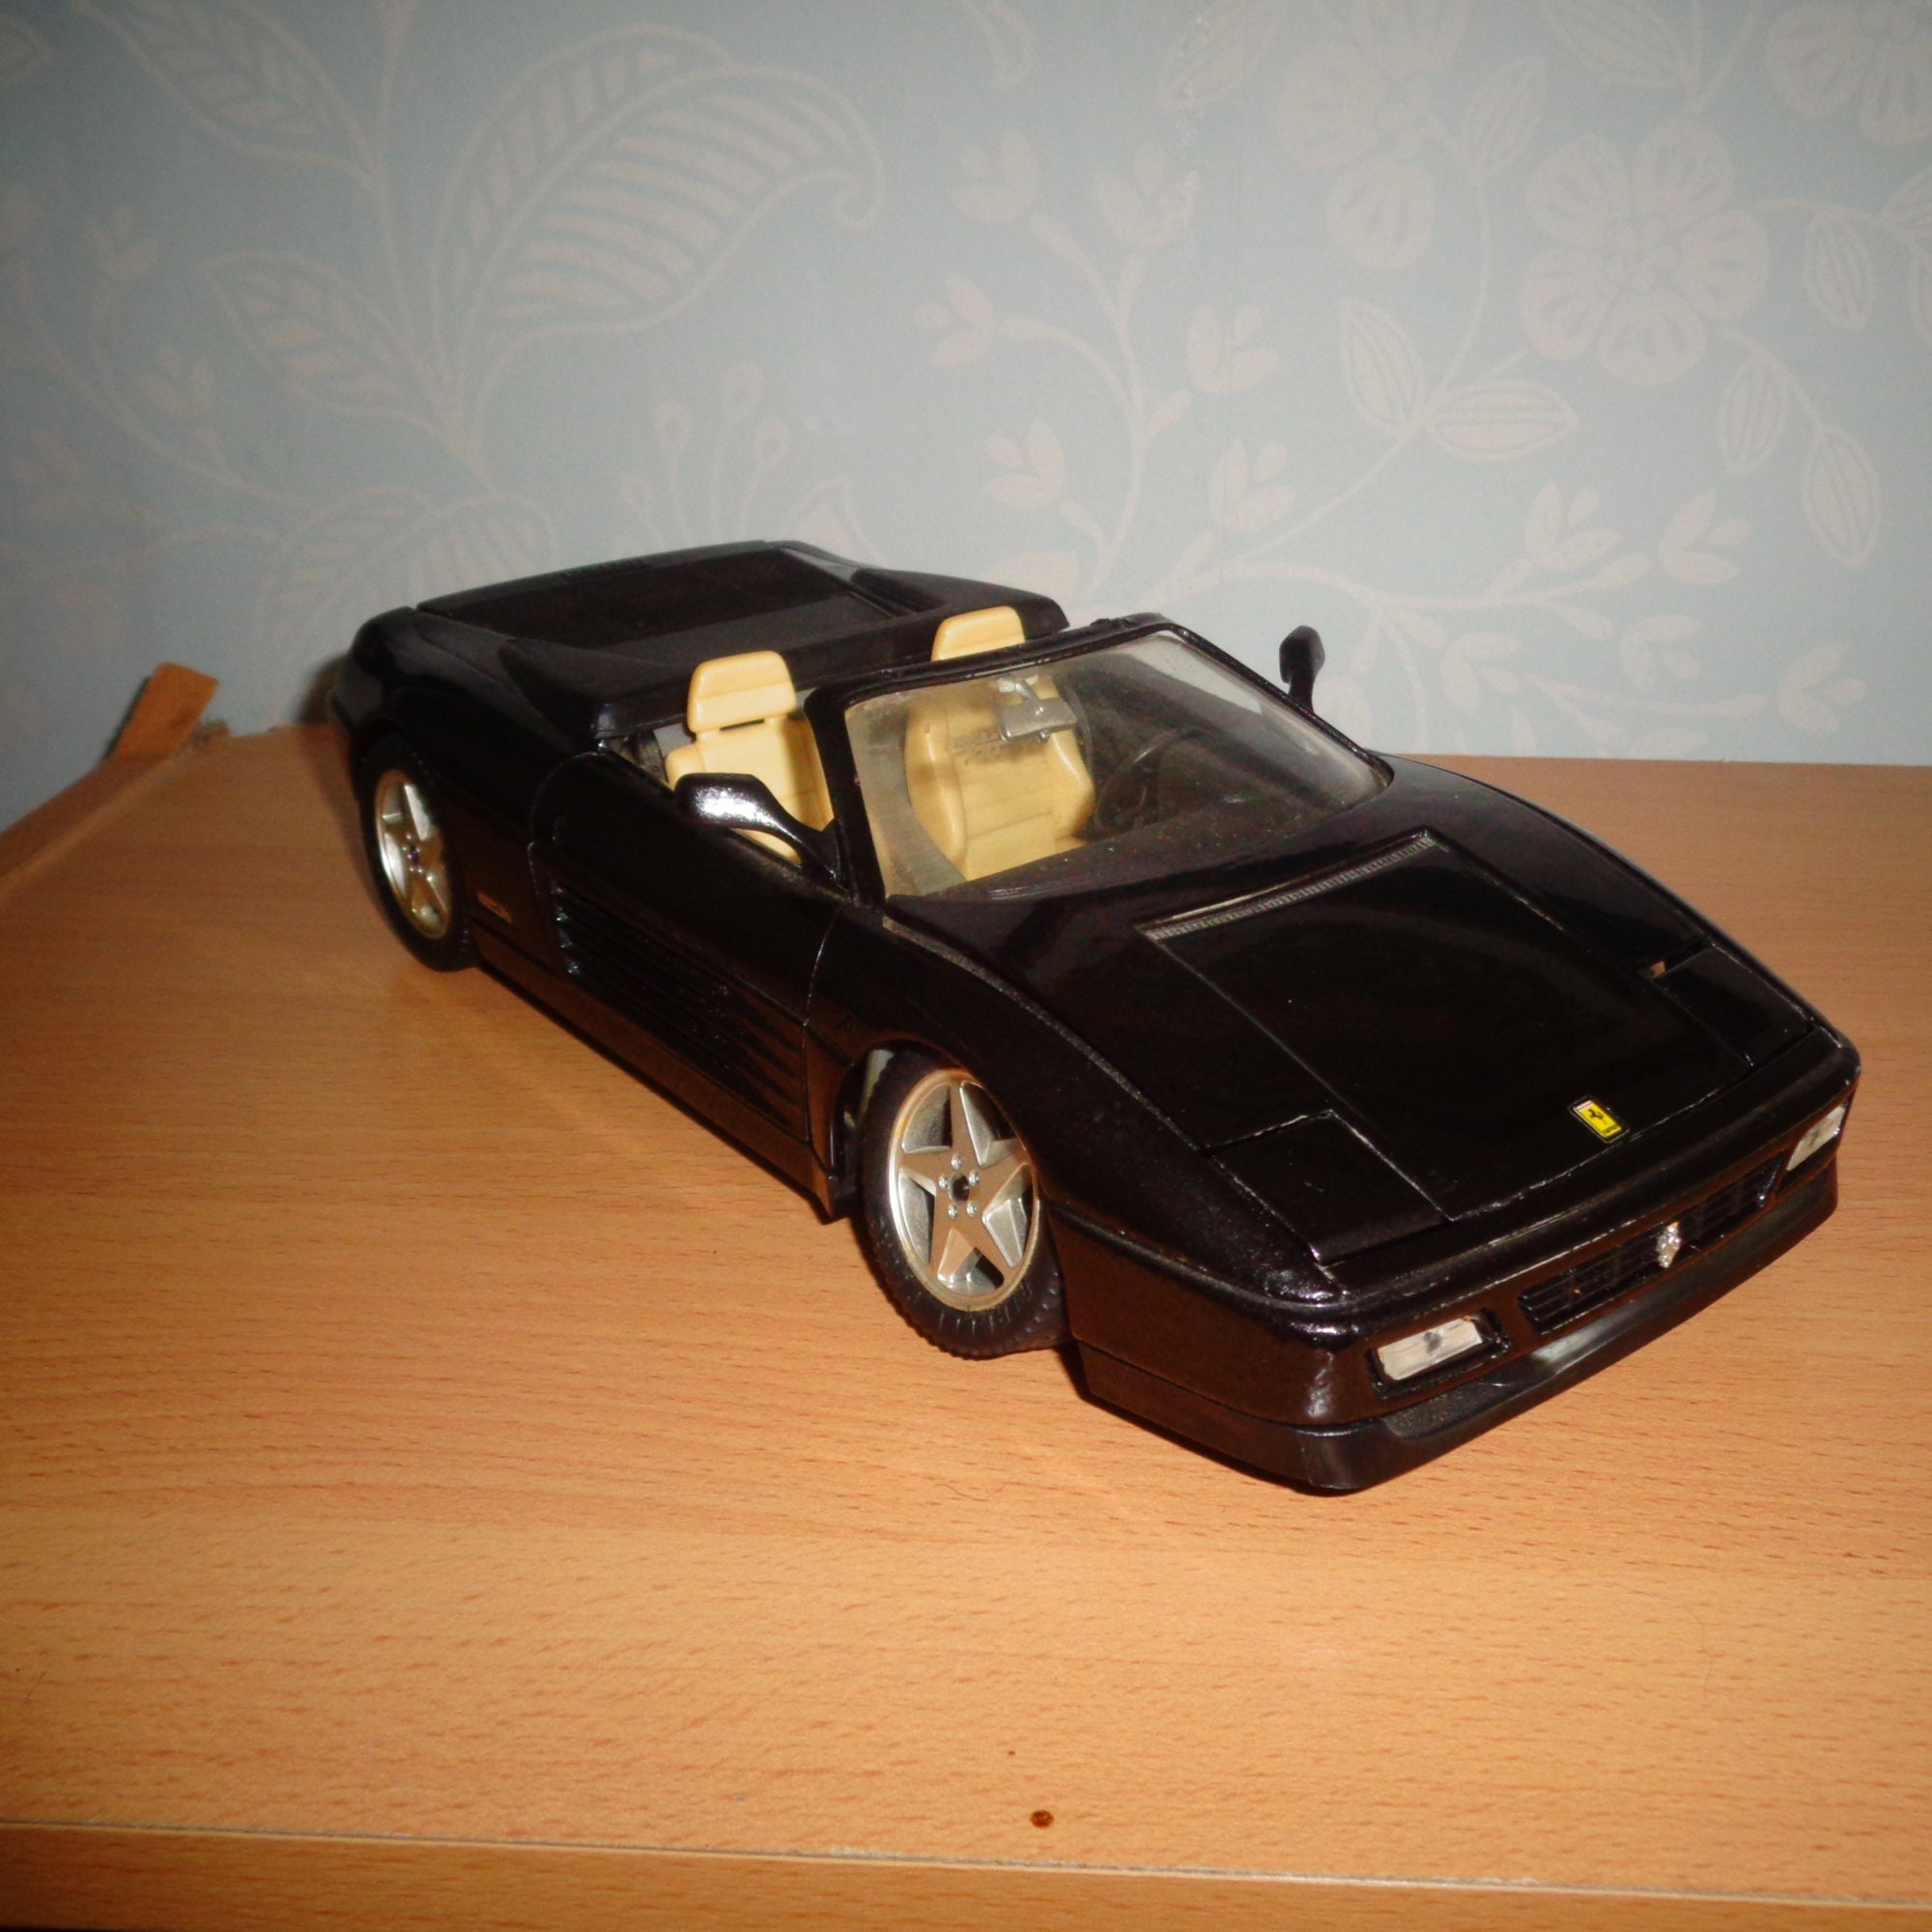 1/25 MIRA Ferrari SPA F1 Formule 1 voiture miniature collection jouet  vintage